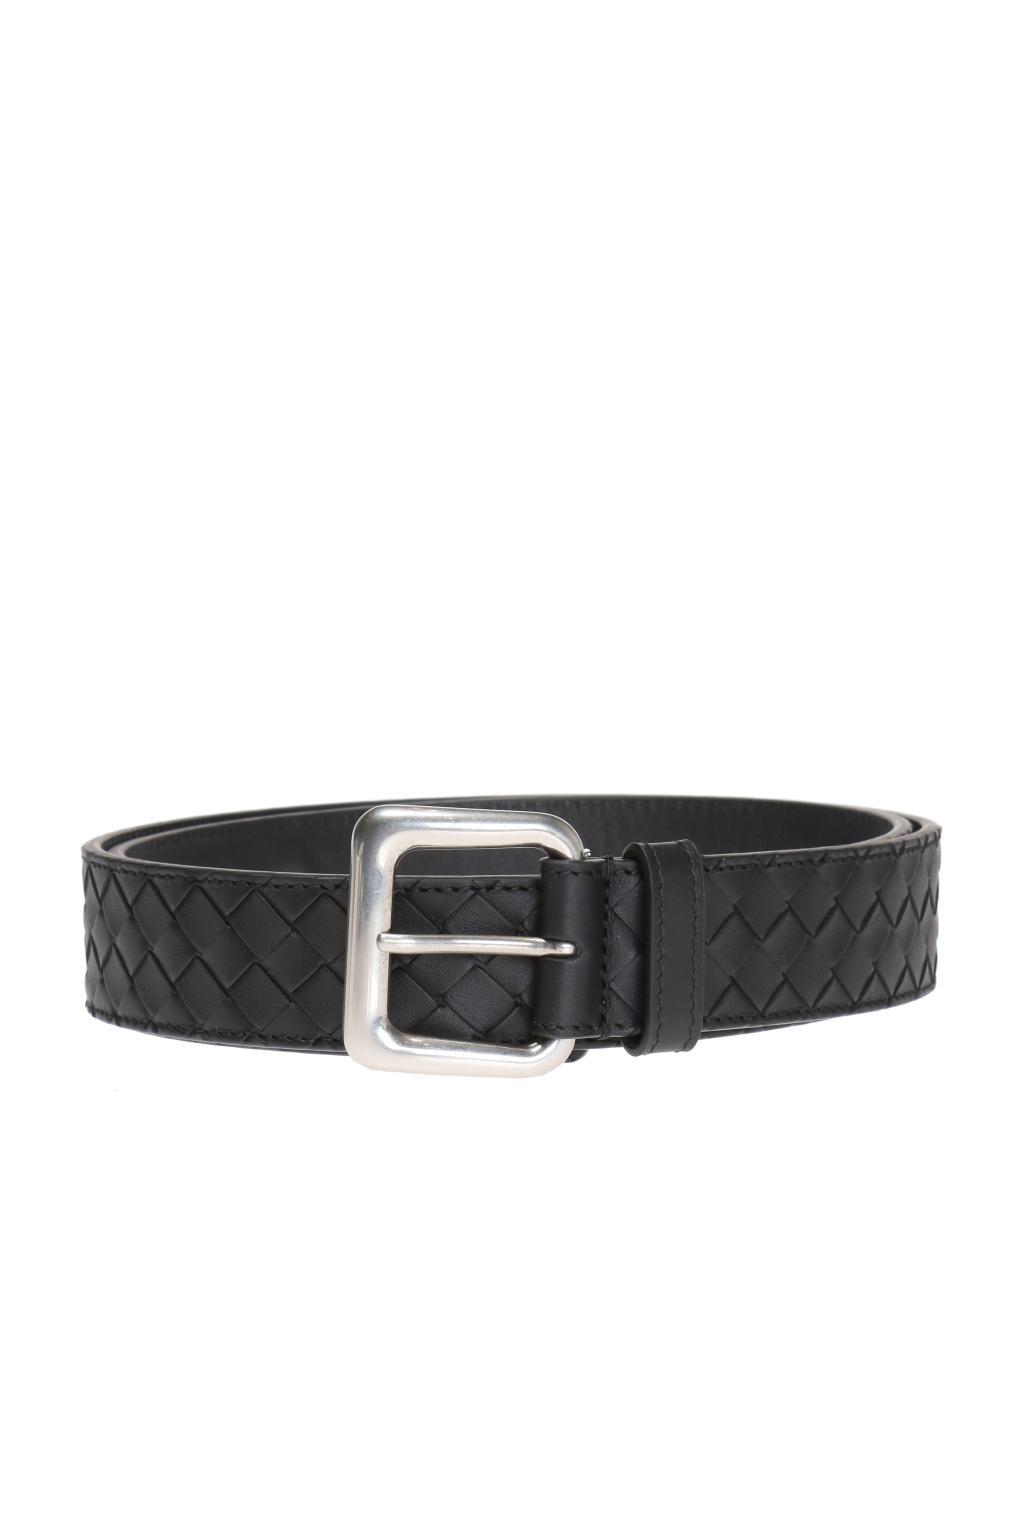 Bottega Veneta Leather 'intrecciato' Belt in Black for Men - Lyst